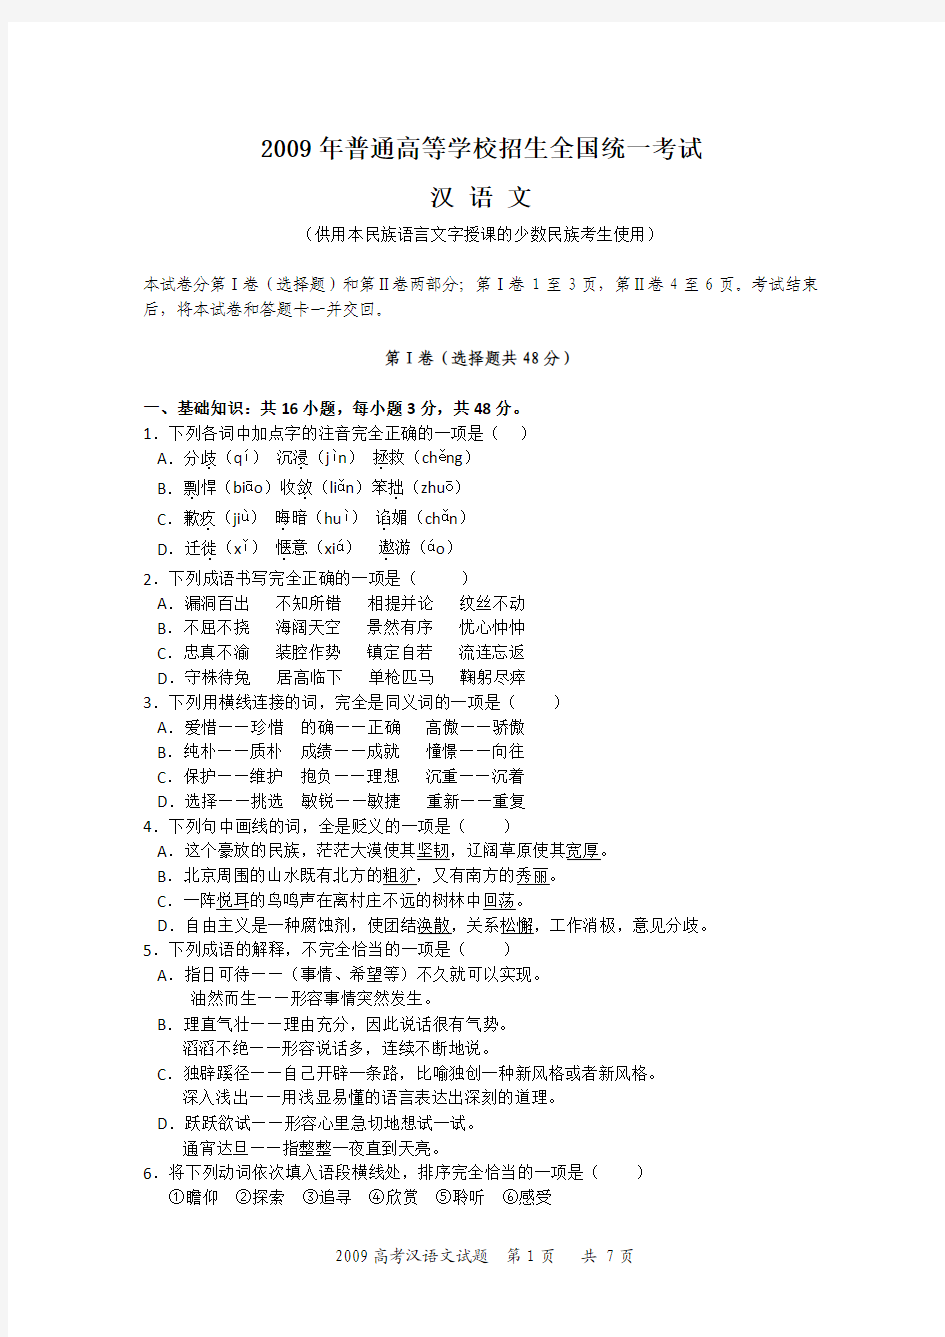 2009年全国统一考试汉语文高考试题及答案